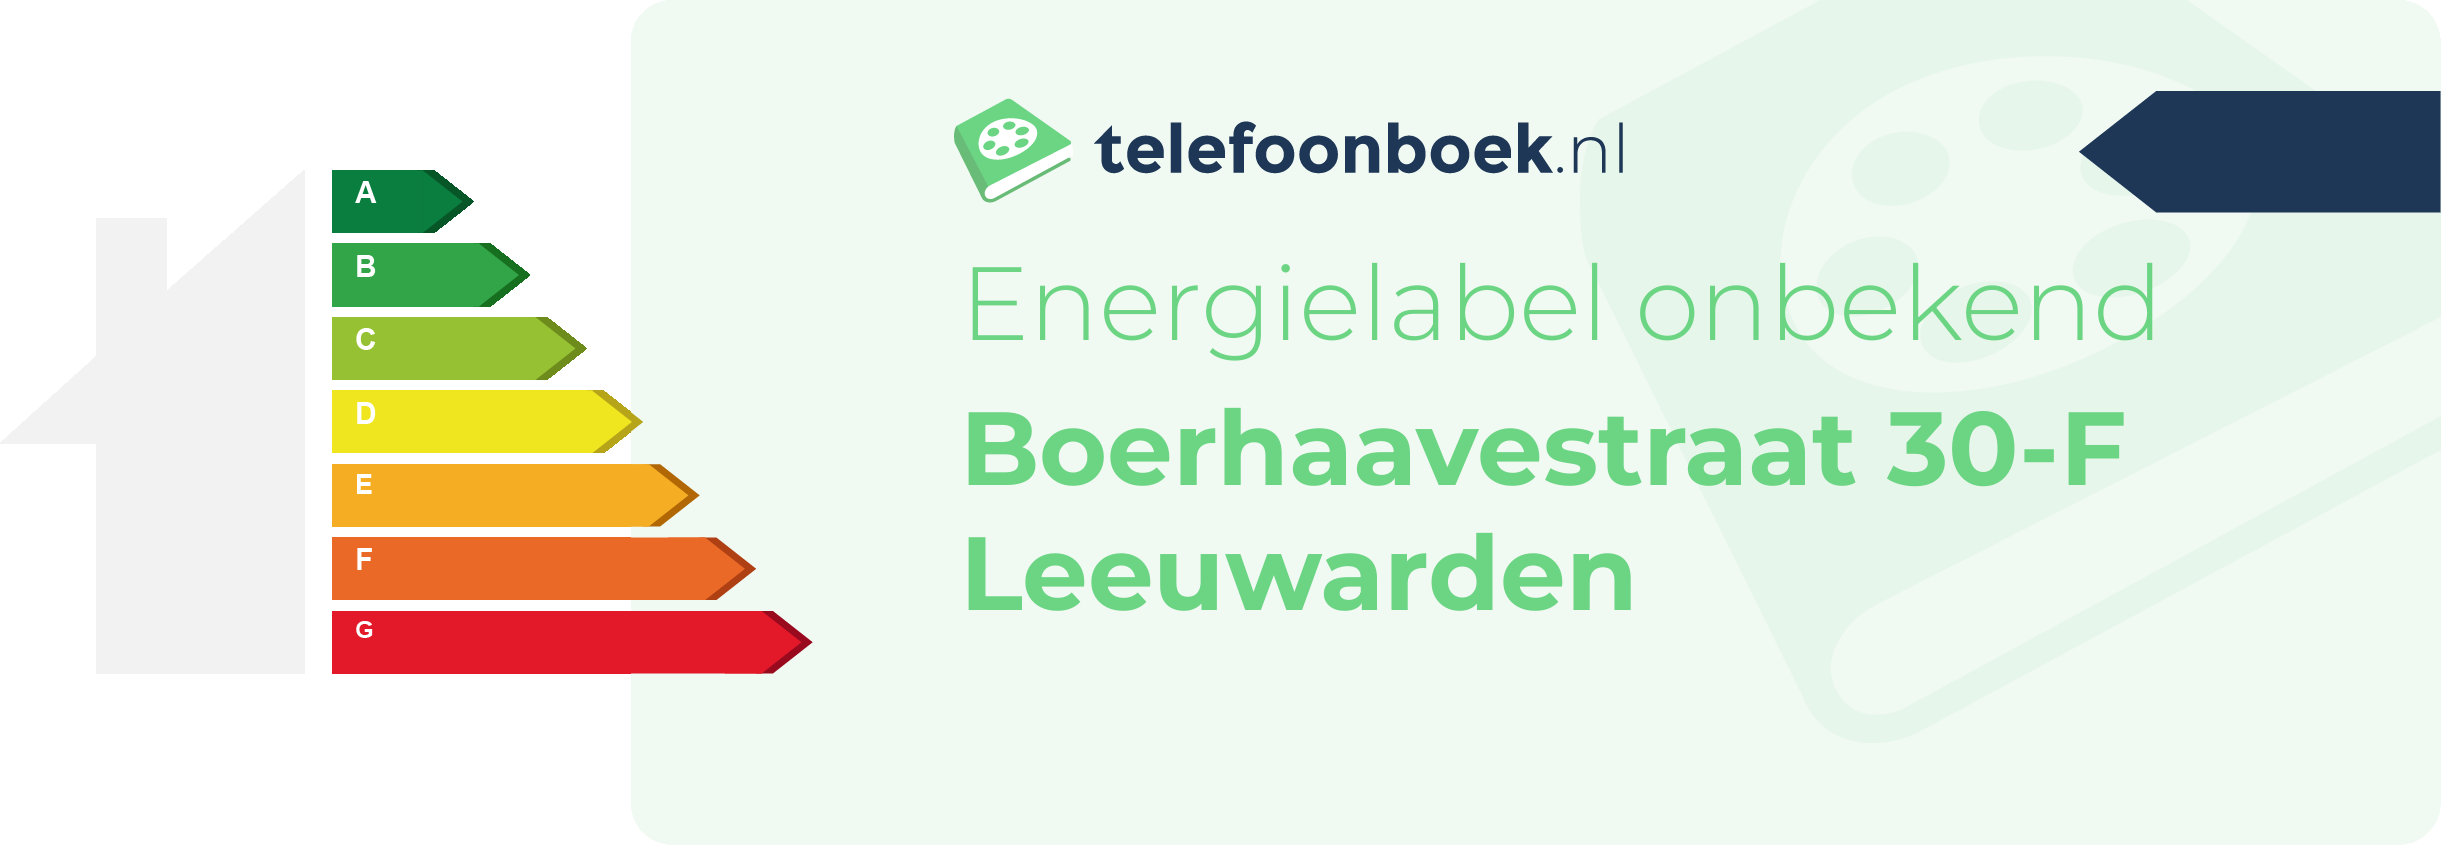 Energielabel Boerhaavestraat 30-F Leeuwarden